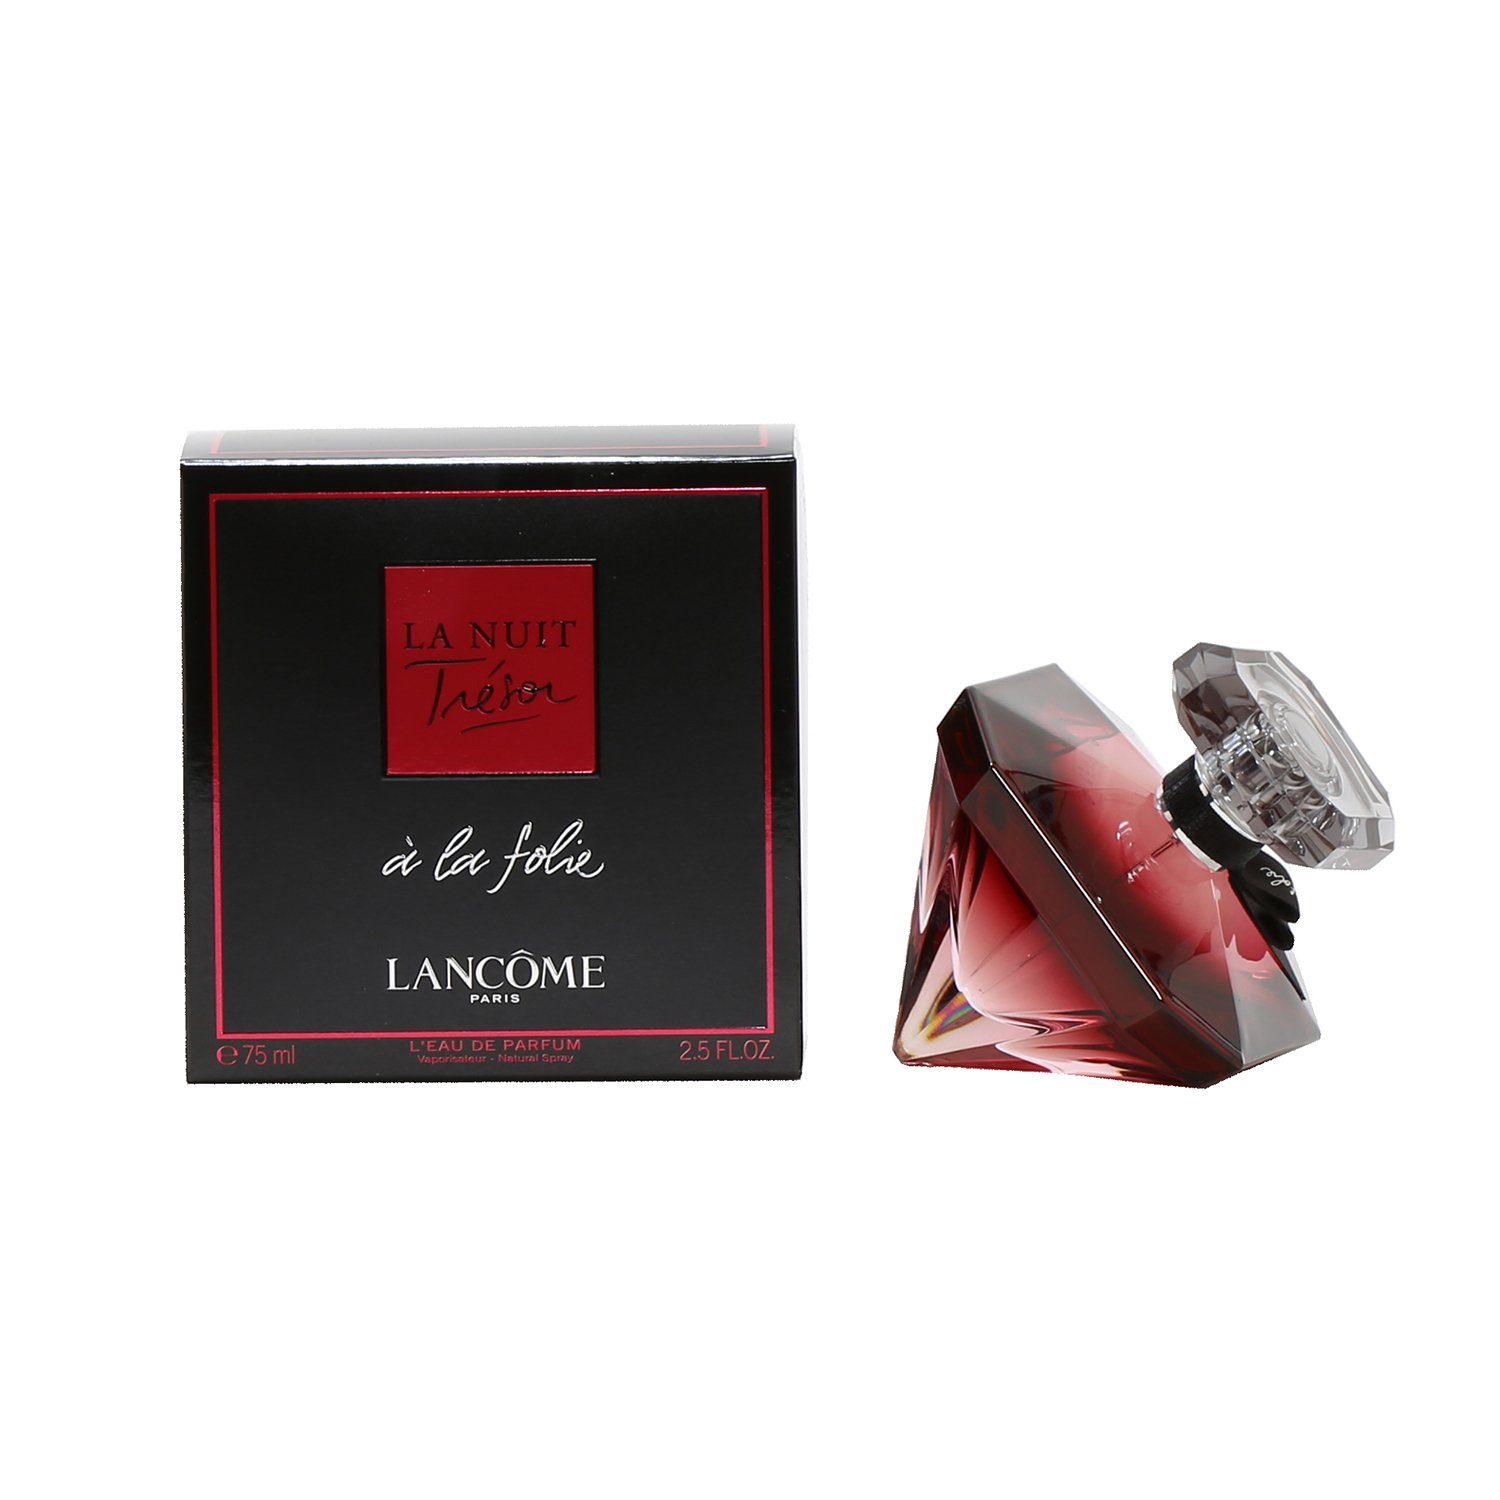 Perfume - LA NUIT TRESOR A LA FOLIE FOR WOMEN BY LANCOME - EAU DE PARFUM SPRAY, 2.5 OZ